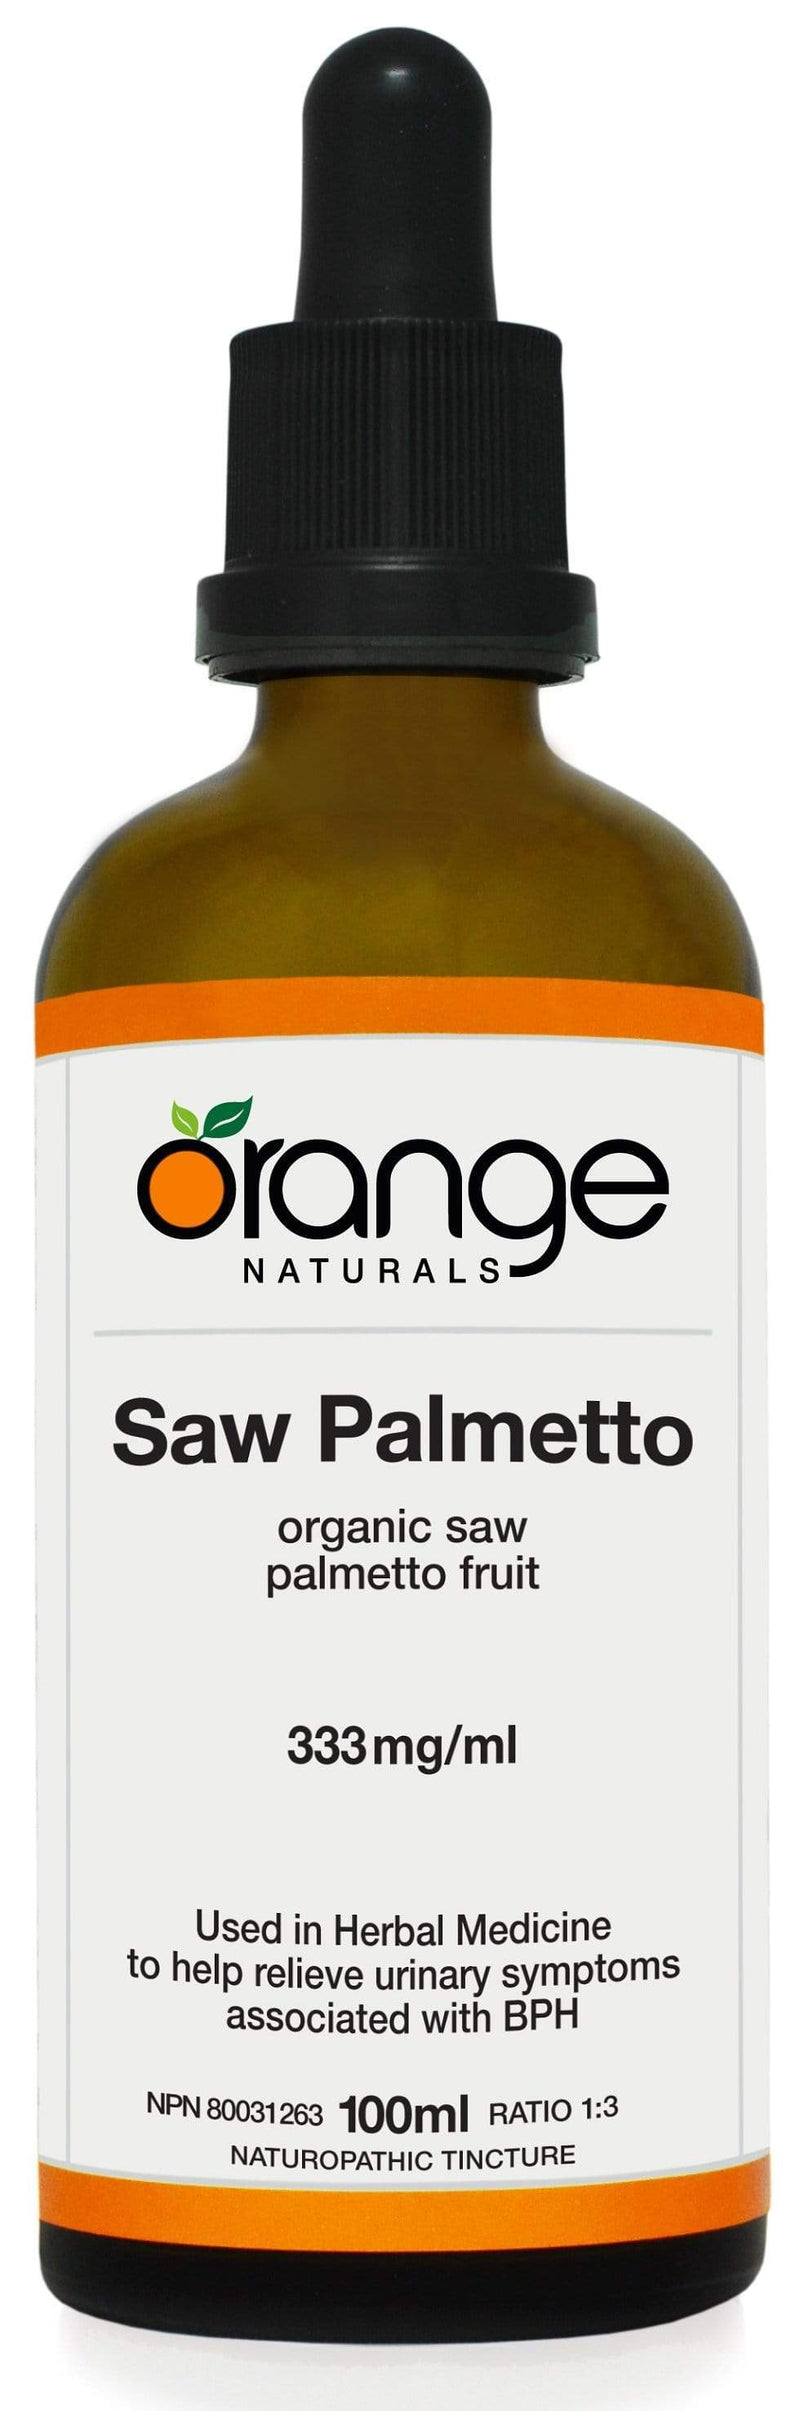 Orange Naturals Saw Palmetto